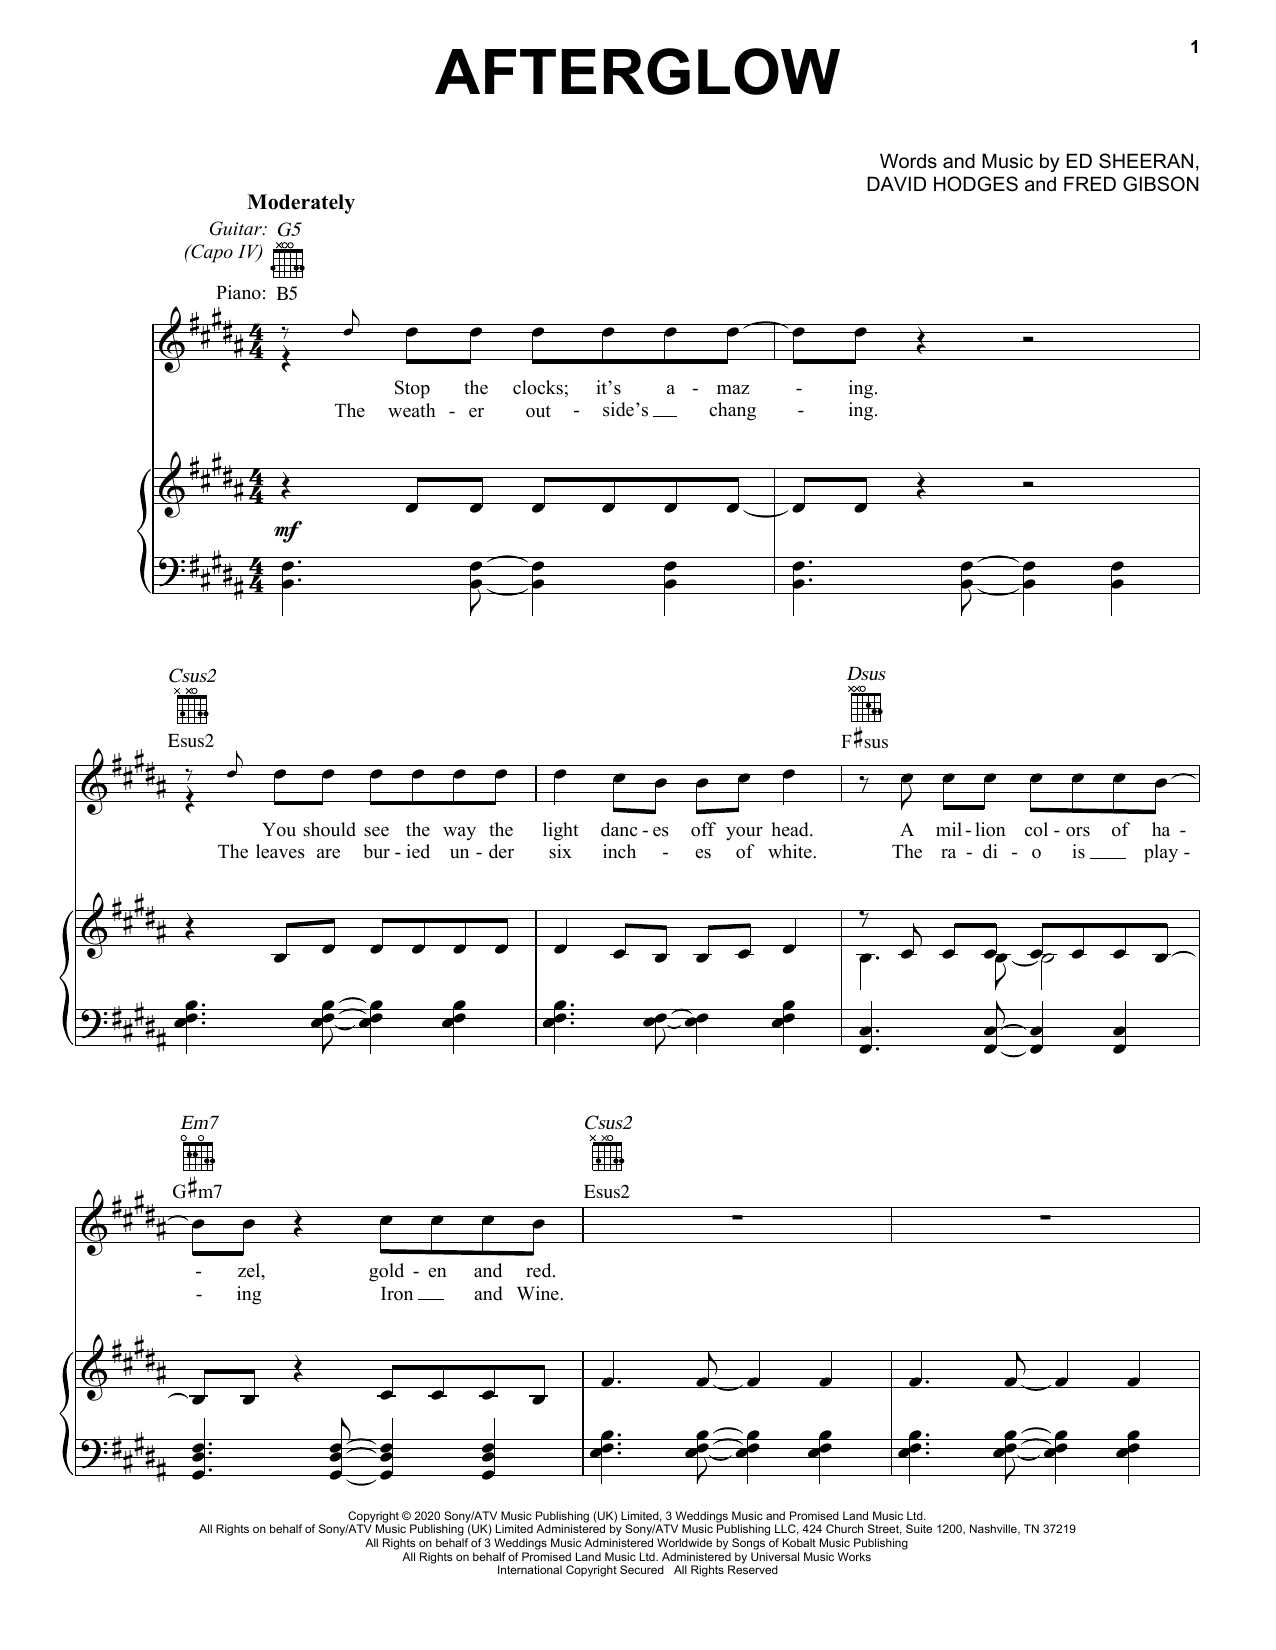 Ed Sheeran Afterglow Sheet Music Notes & Chords for Guitar Chords/Lyrics - Download or Print PDF